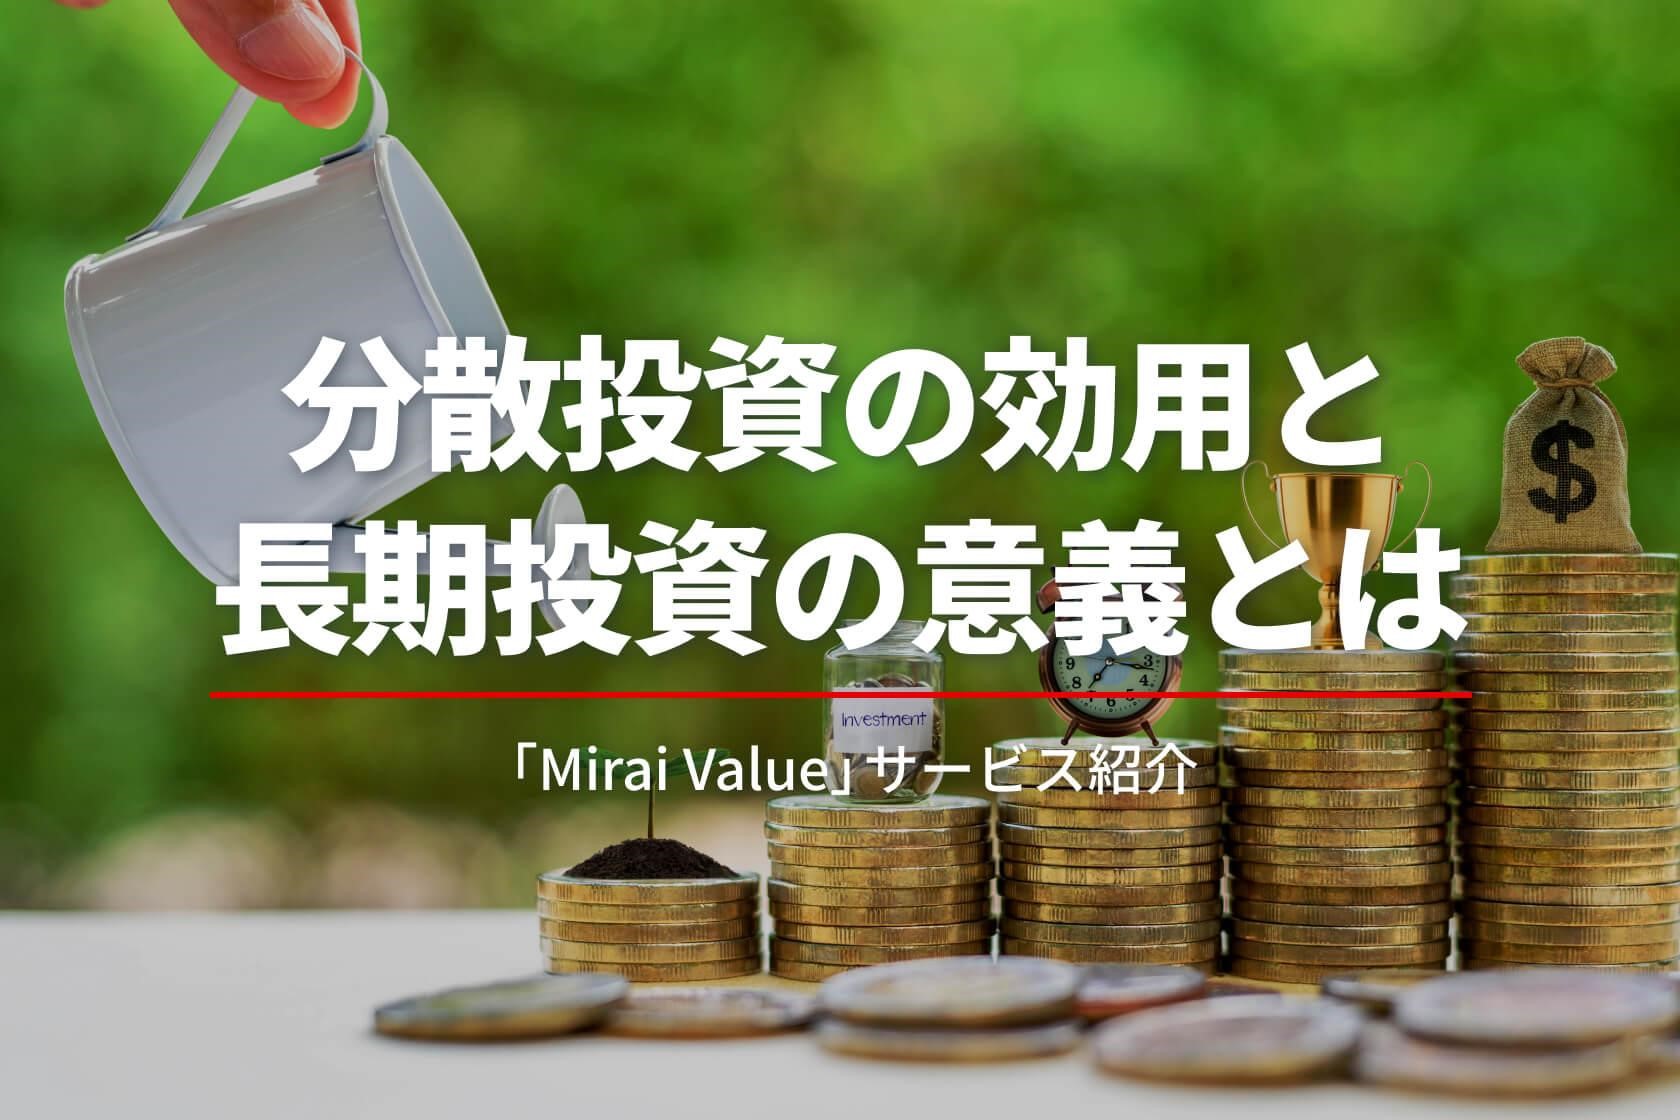 分散投資の効用と長期投資の意義とは　「Mirai Value」サービス紹介